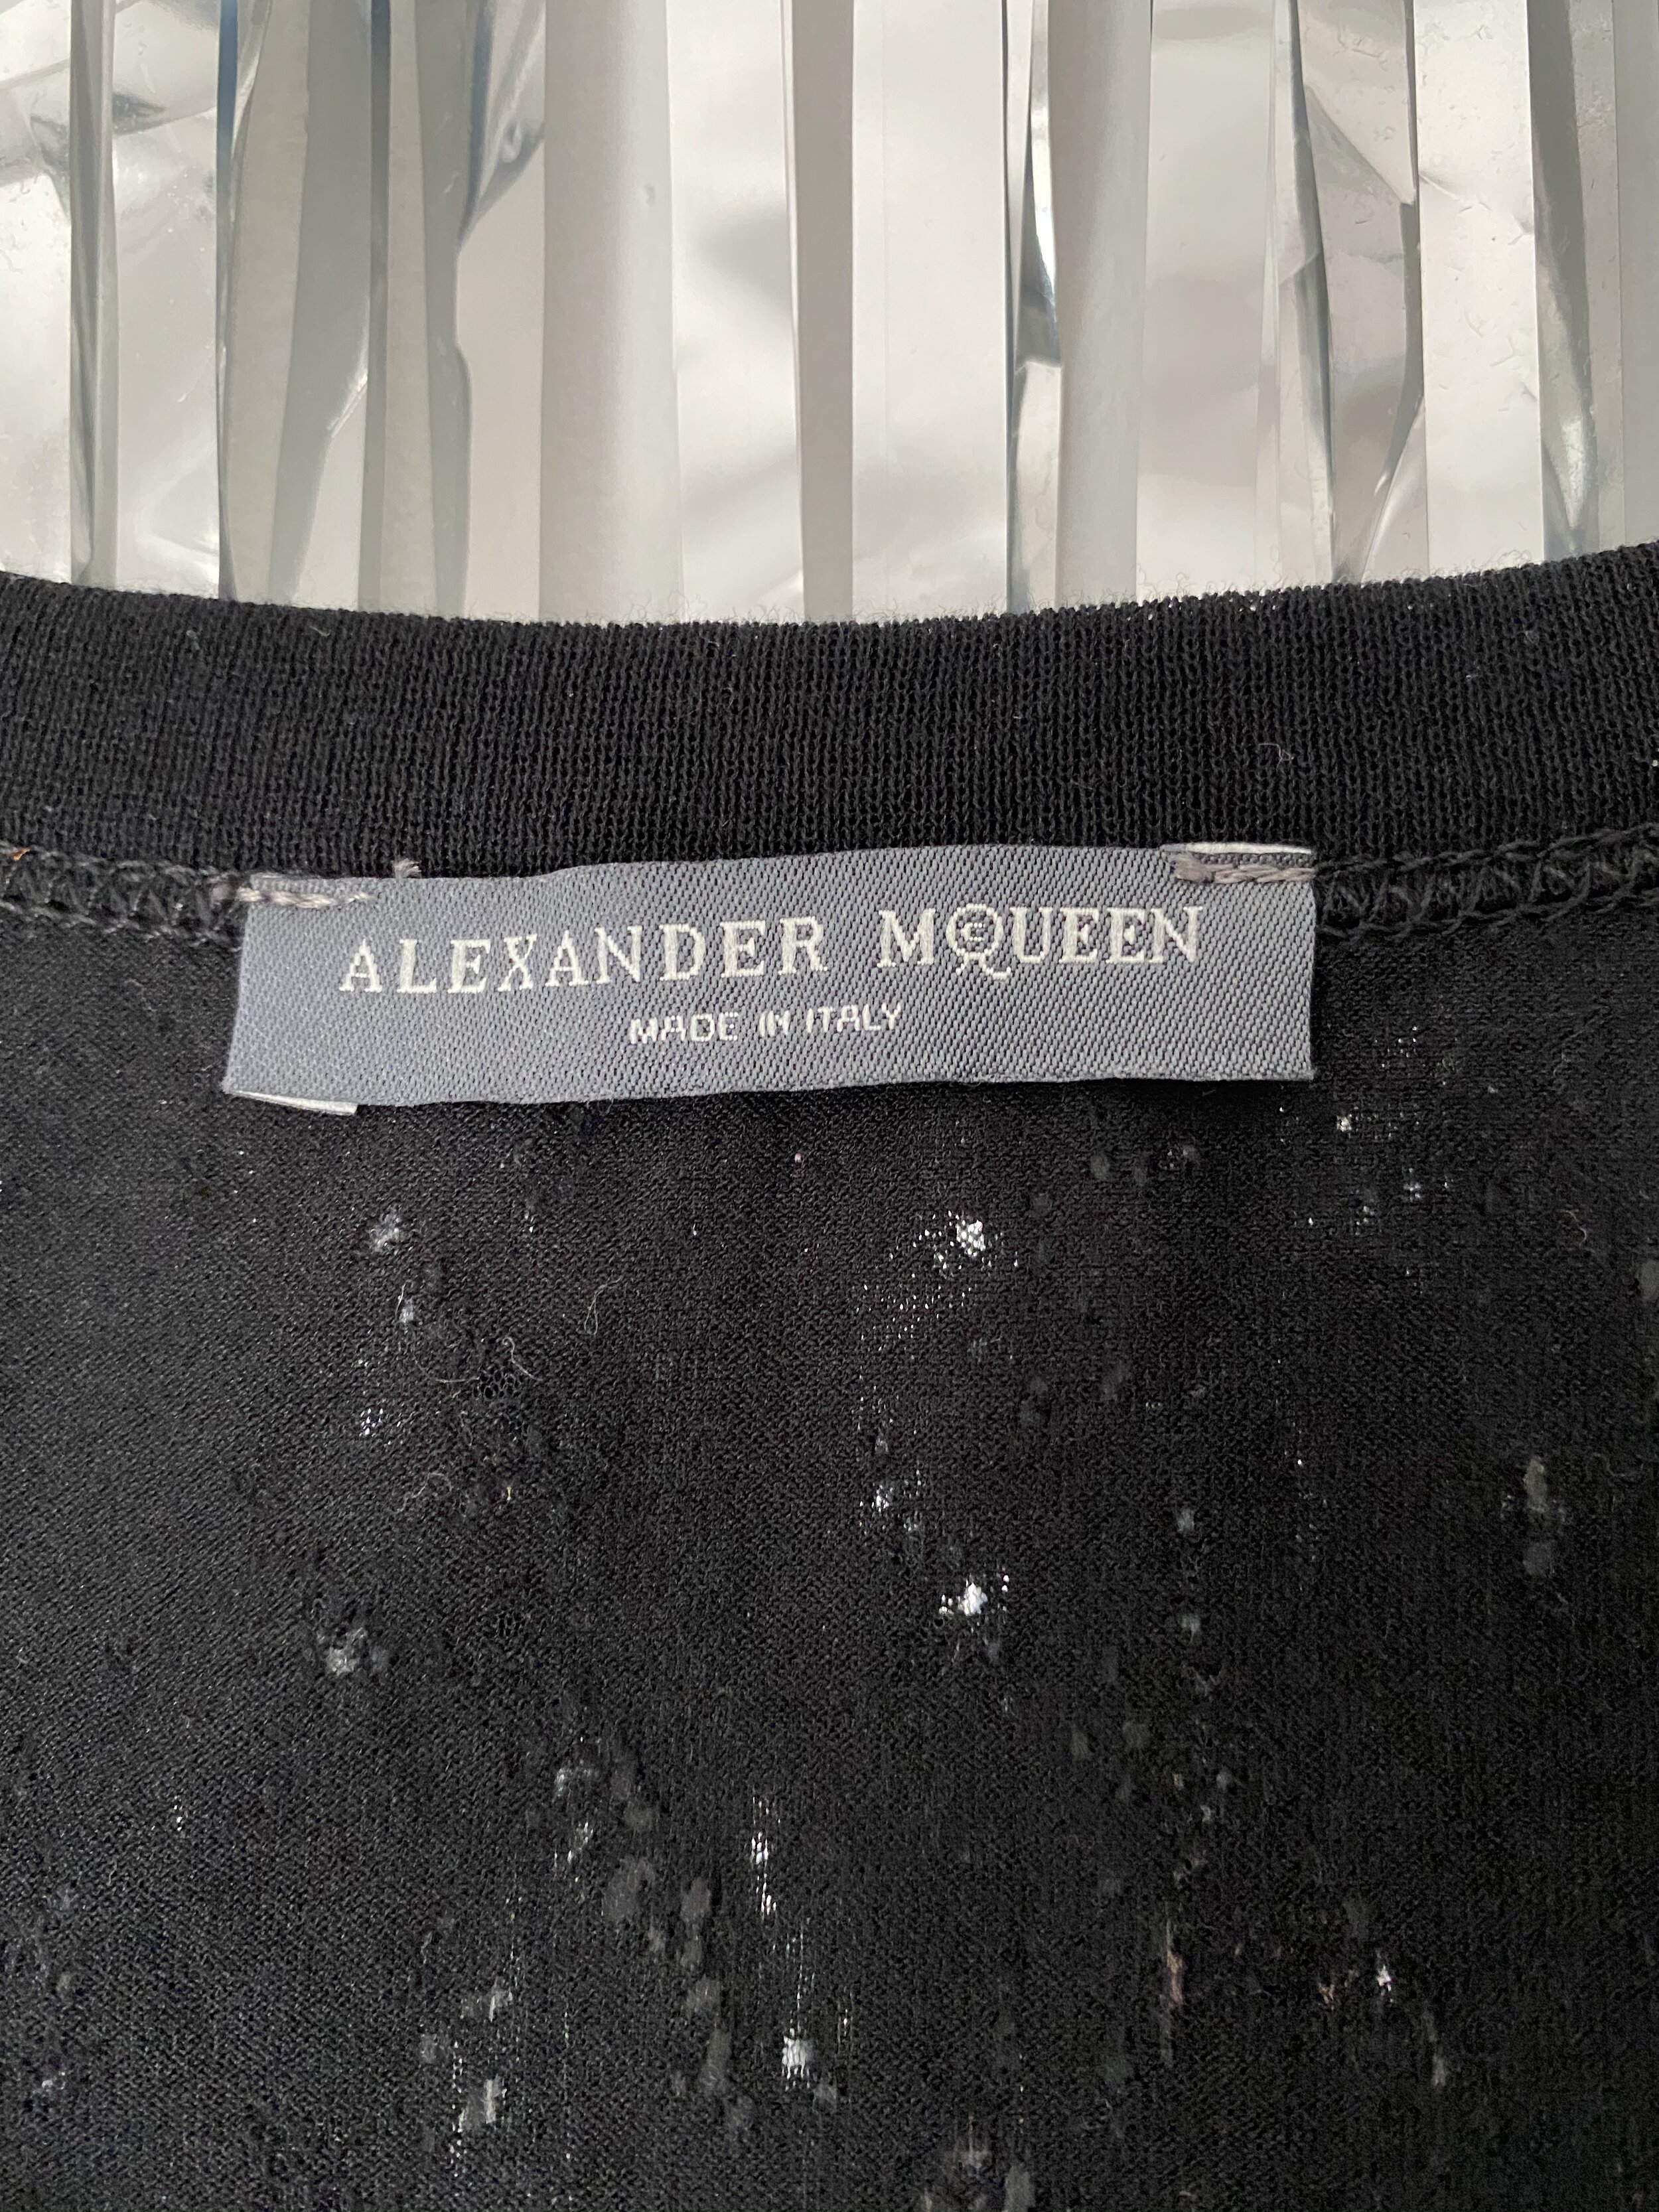 alexander mcqueen label